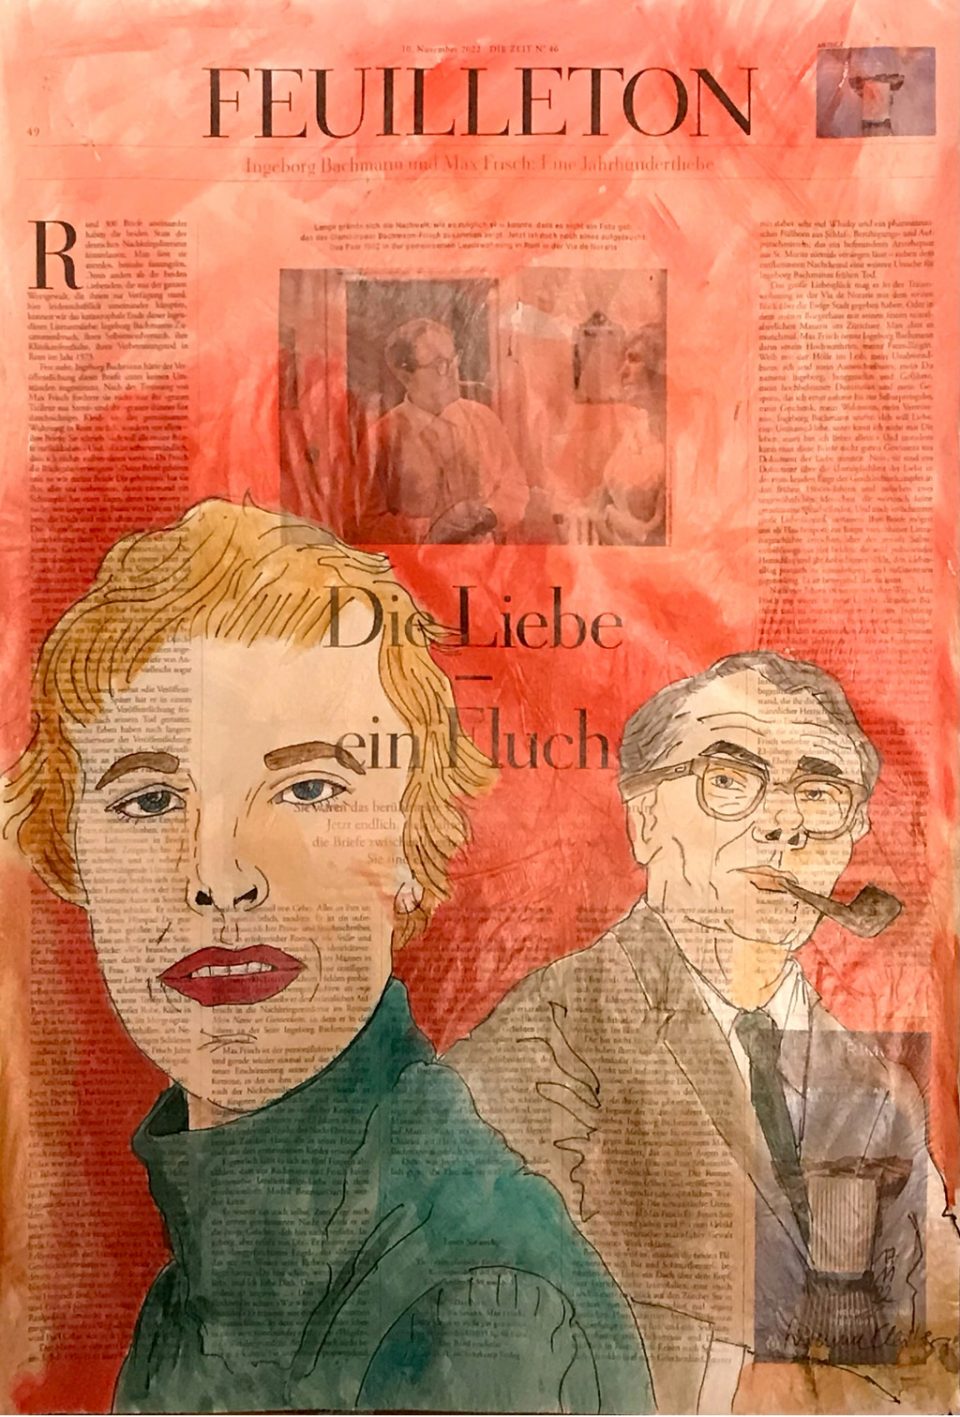 Porträt von Ingeborg Bachmann, vorne, und Max Frisch im Hintergrund auf ganzer Zeitungsseite 56 x 40 cm